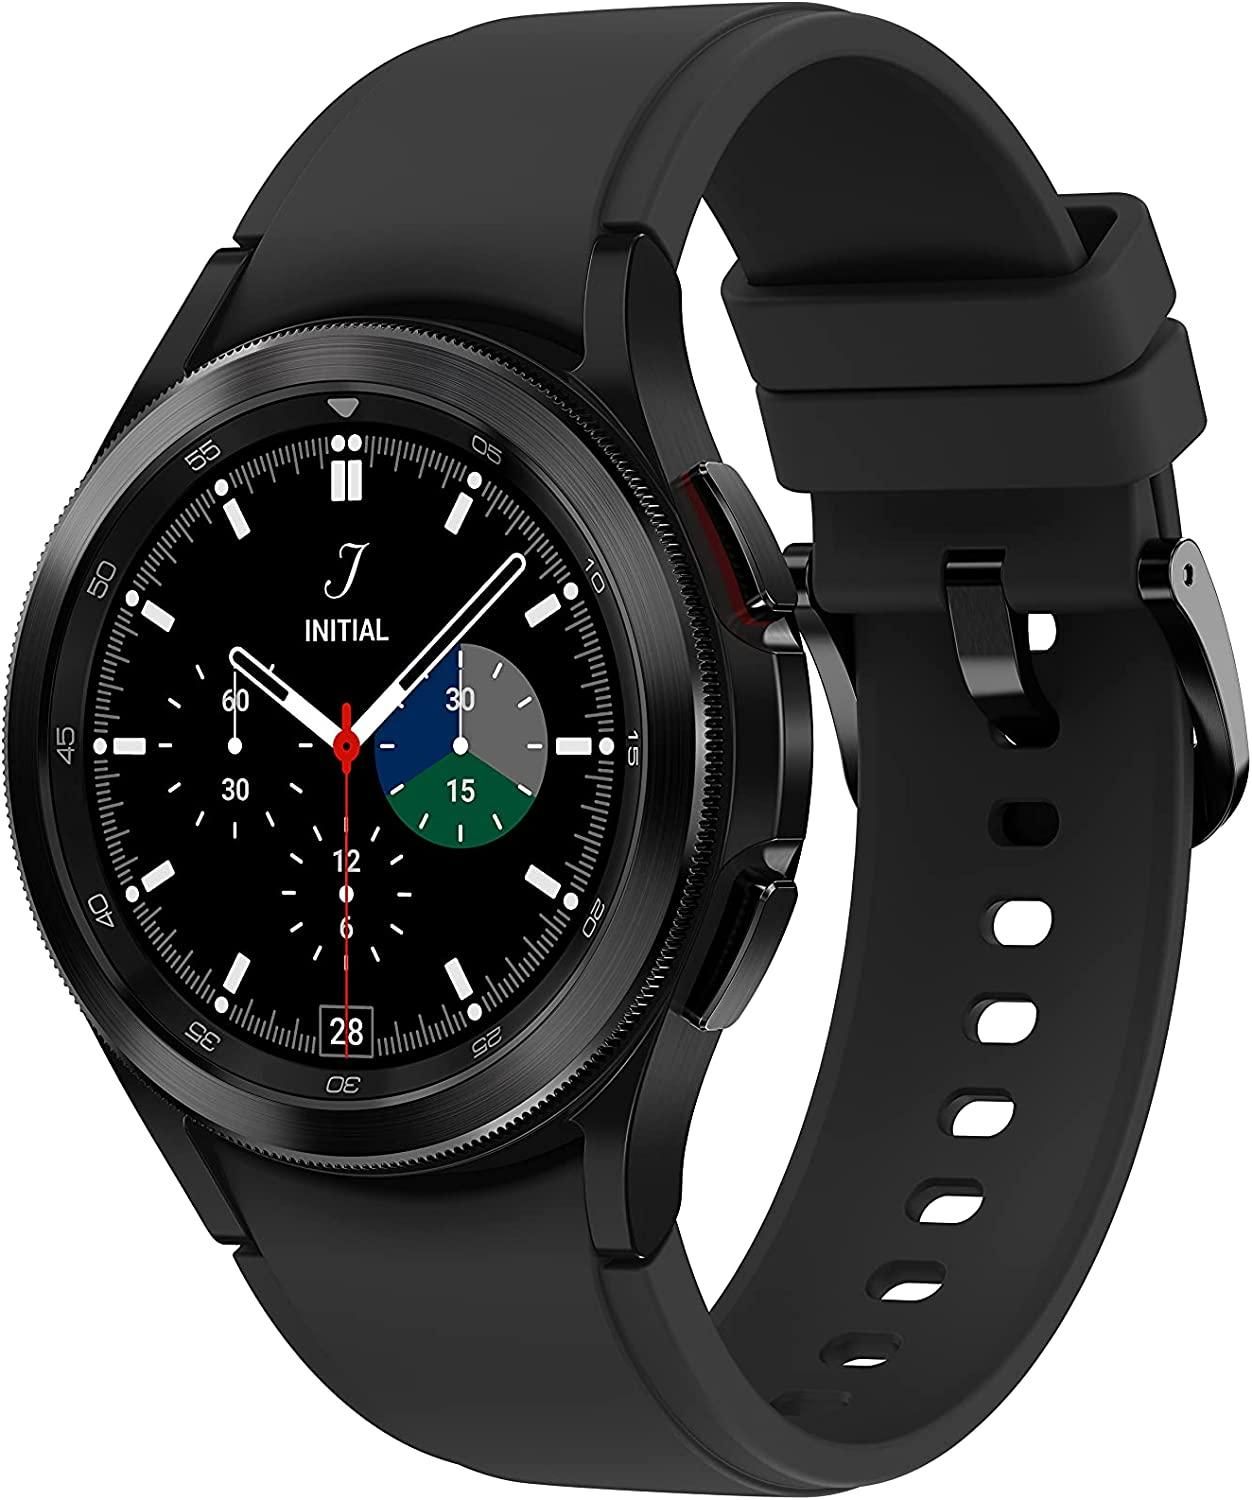 Samsung Galaxy Watch 4 Classic siyah ürün kutusu görseli